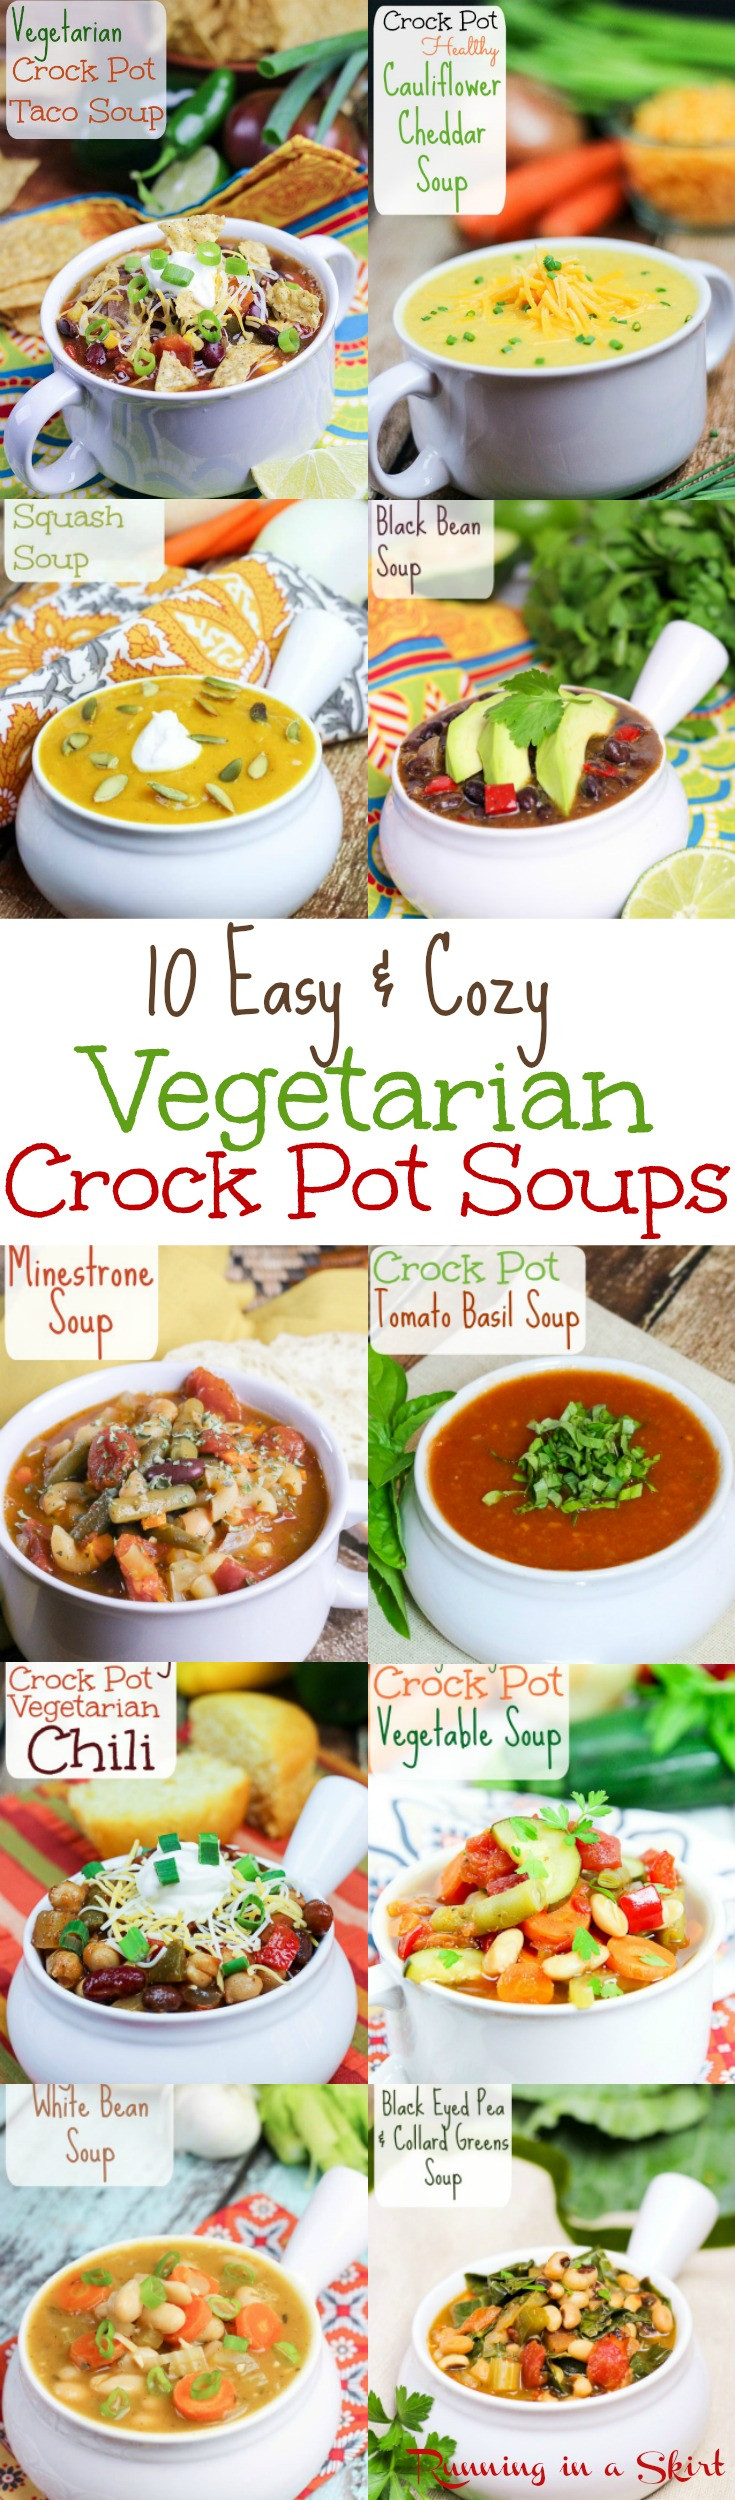 Easy Vegan Crock Pot Recipes
 10 Cozy Ve arian Crock Pot Soup recipes